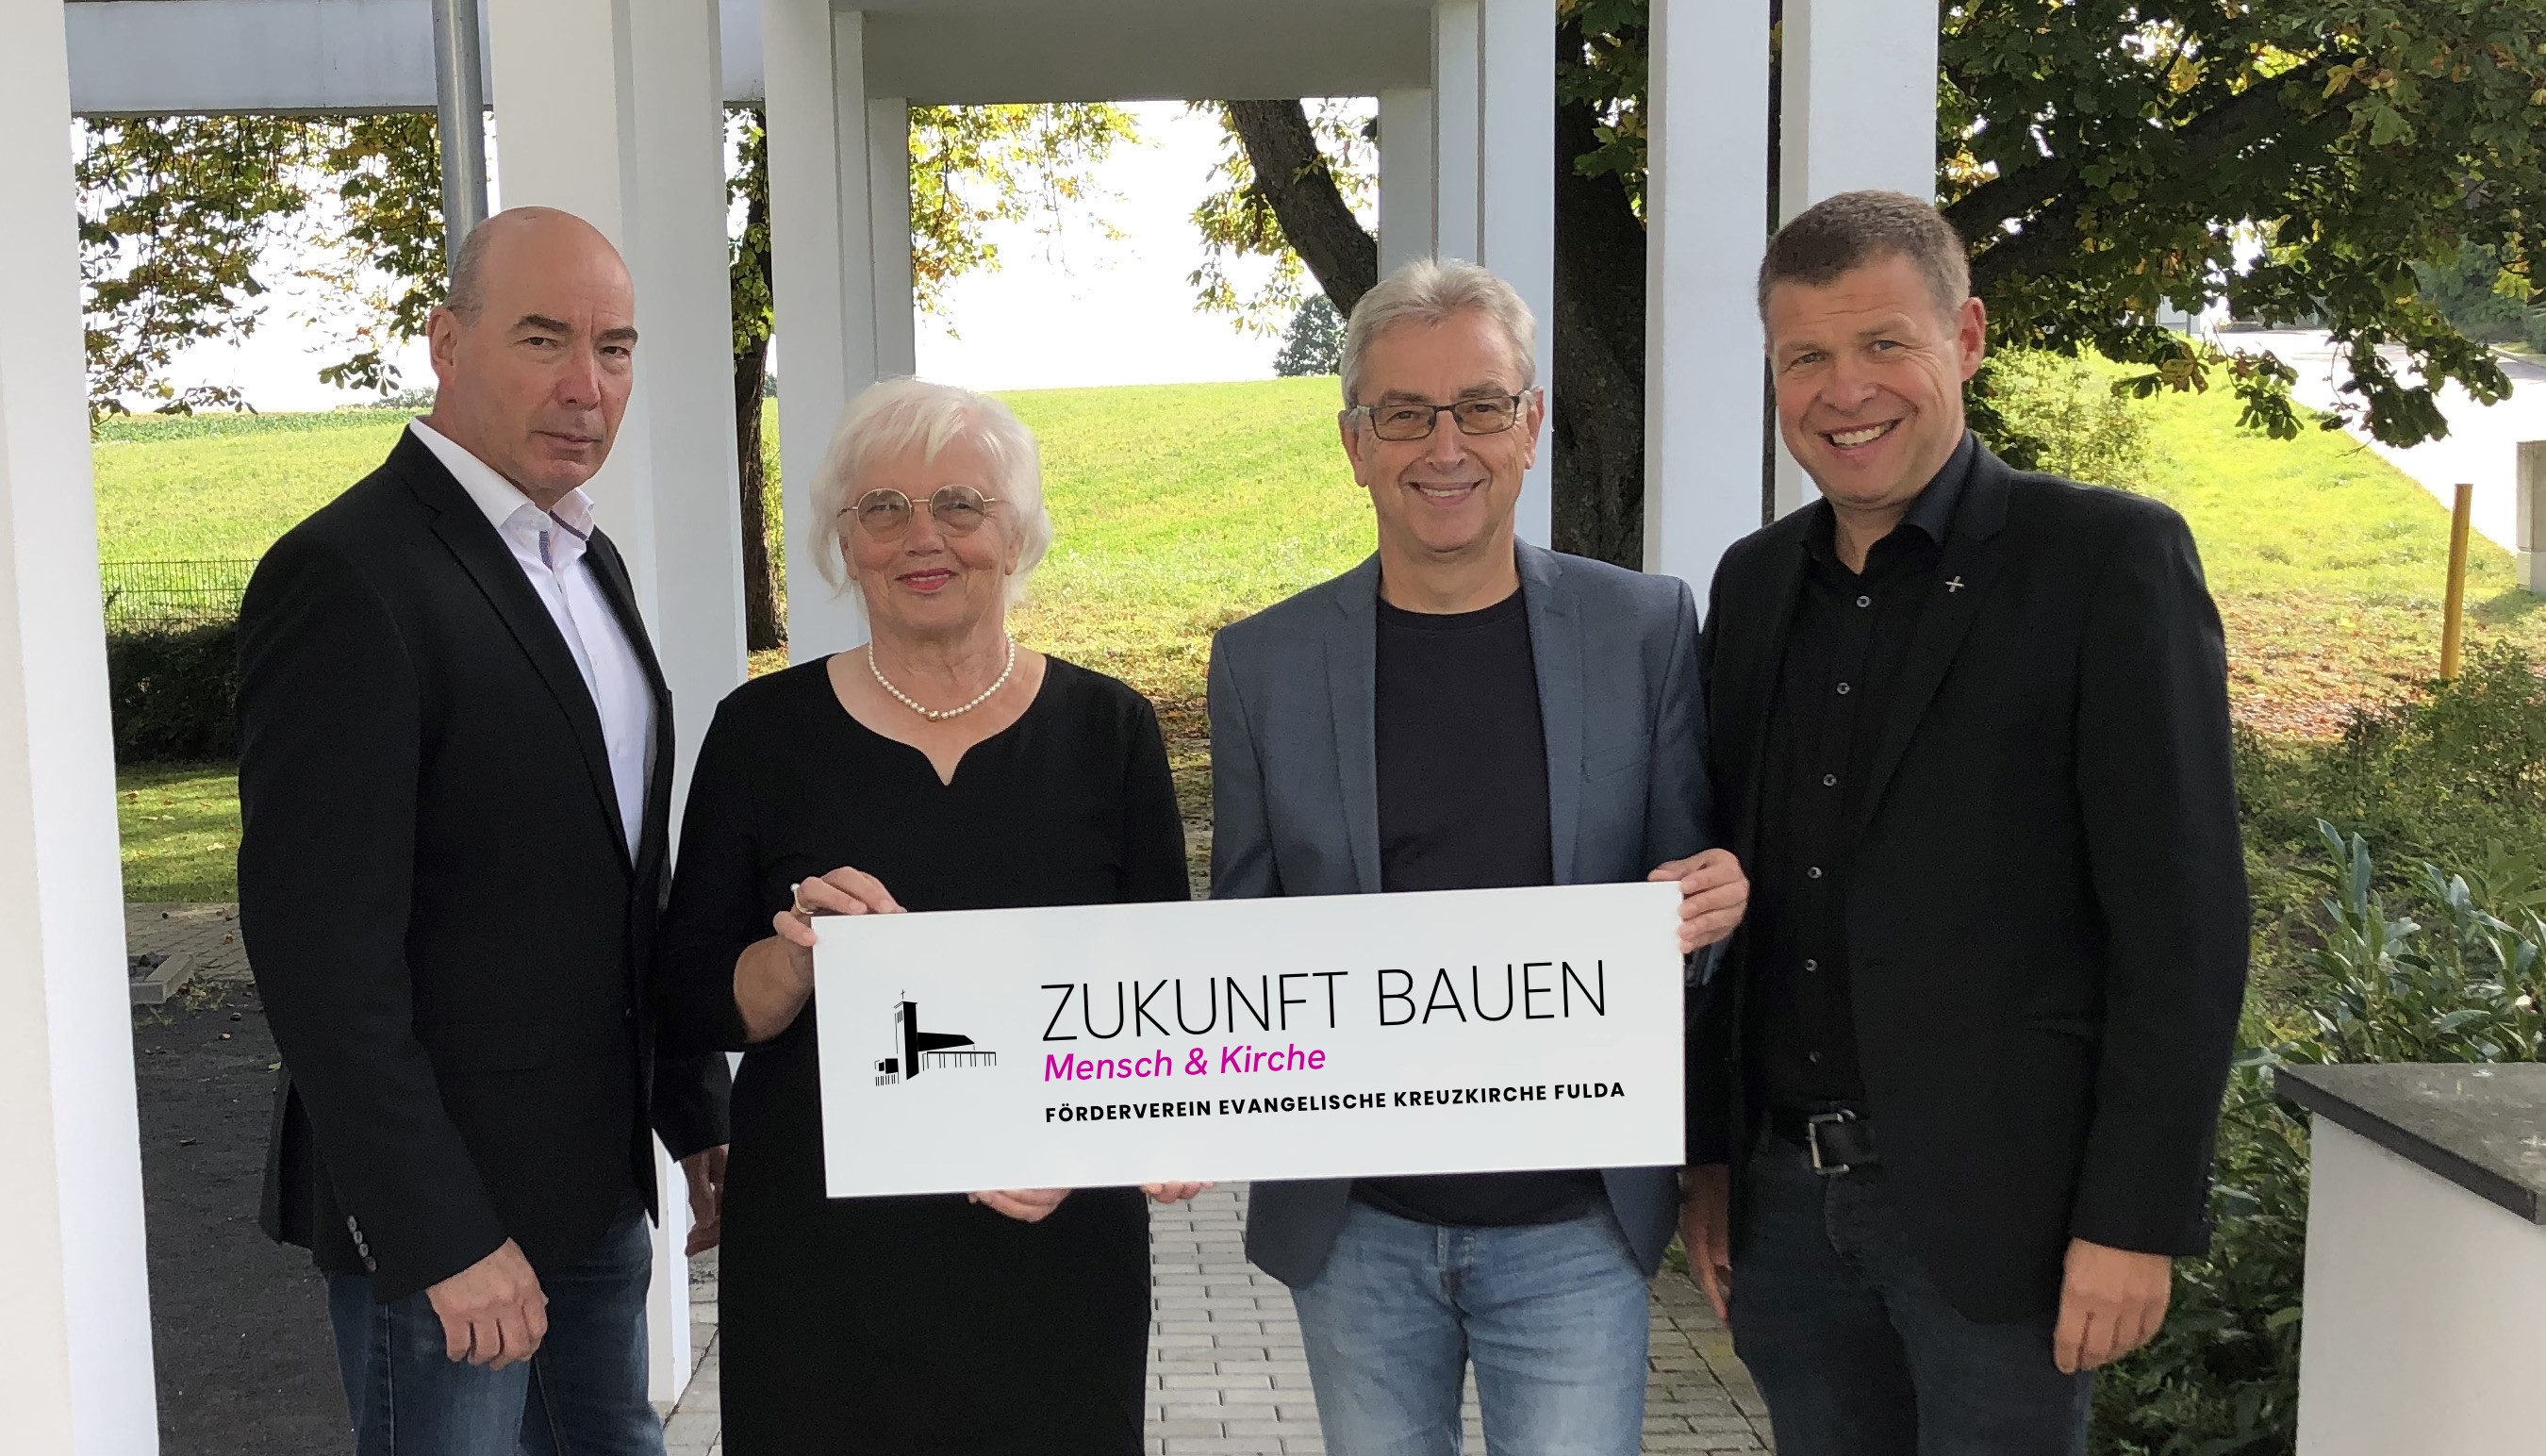 Förderverein der Kreuzkirche "baut" weiter Zukunft - Zukunft bauen für Mensch und Kirche